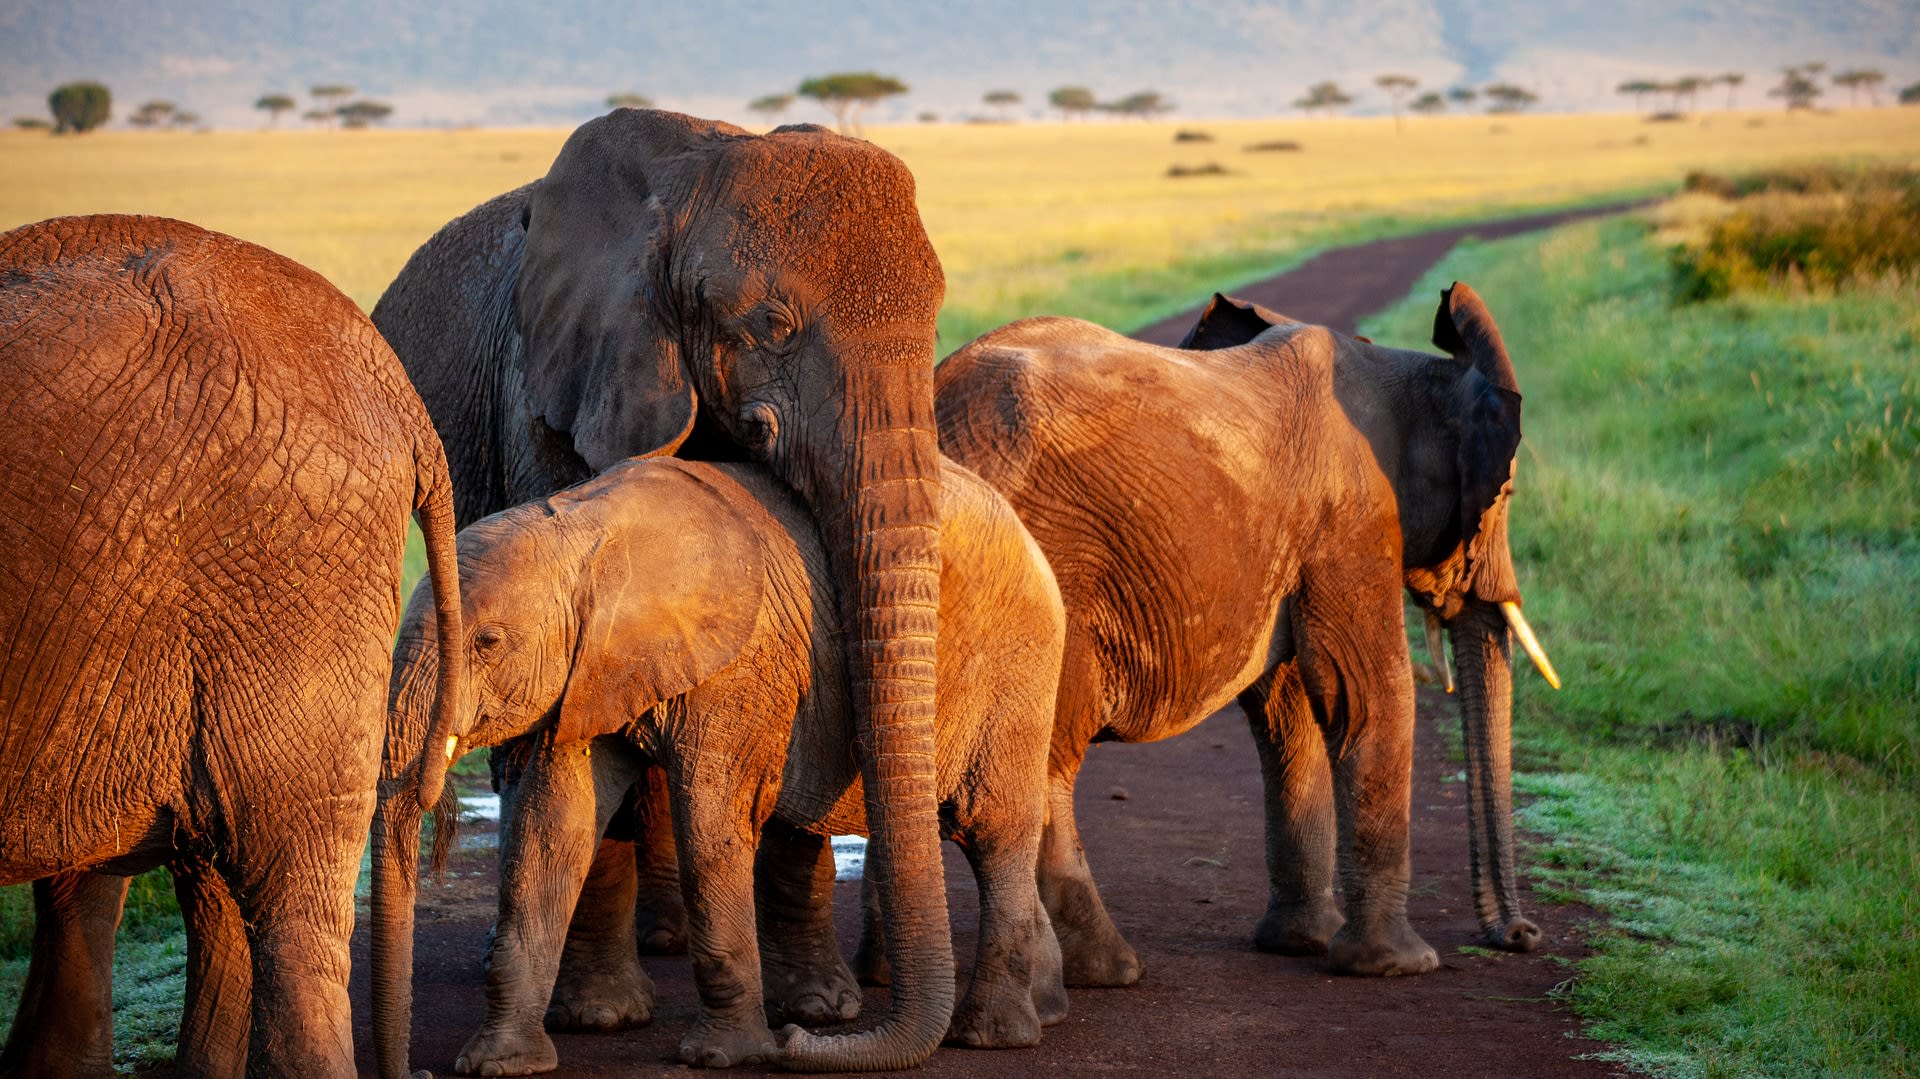 Sloni jsou vysoce společenská zvířata, která utváří rodinné skupiny. 